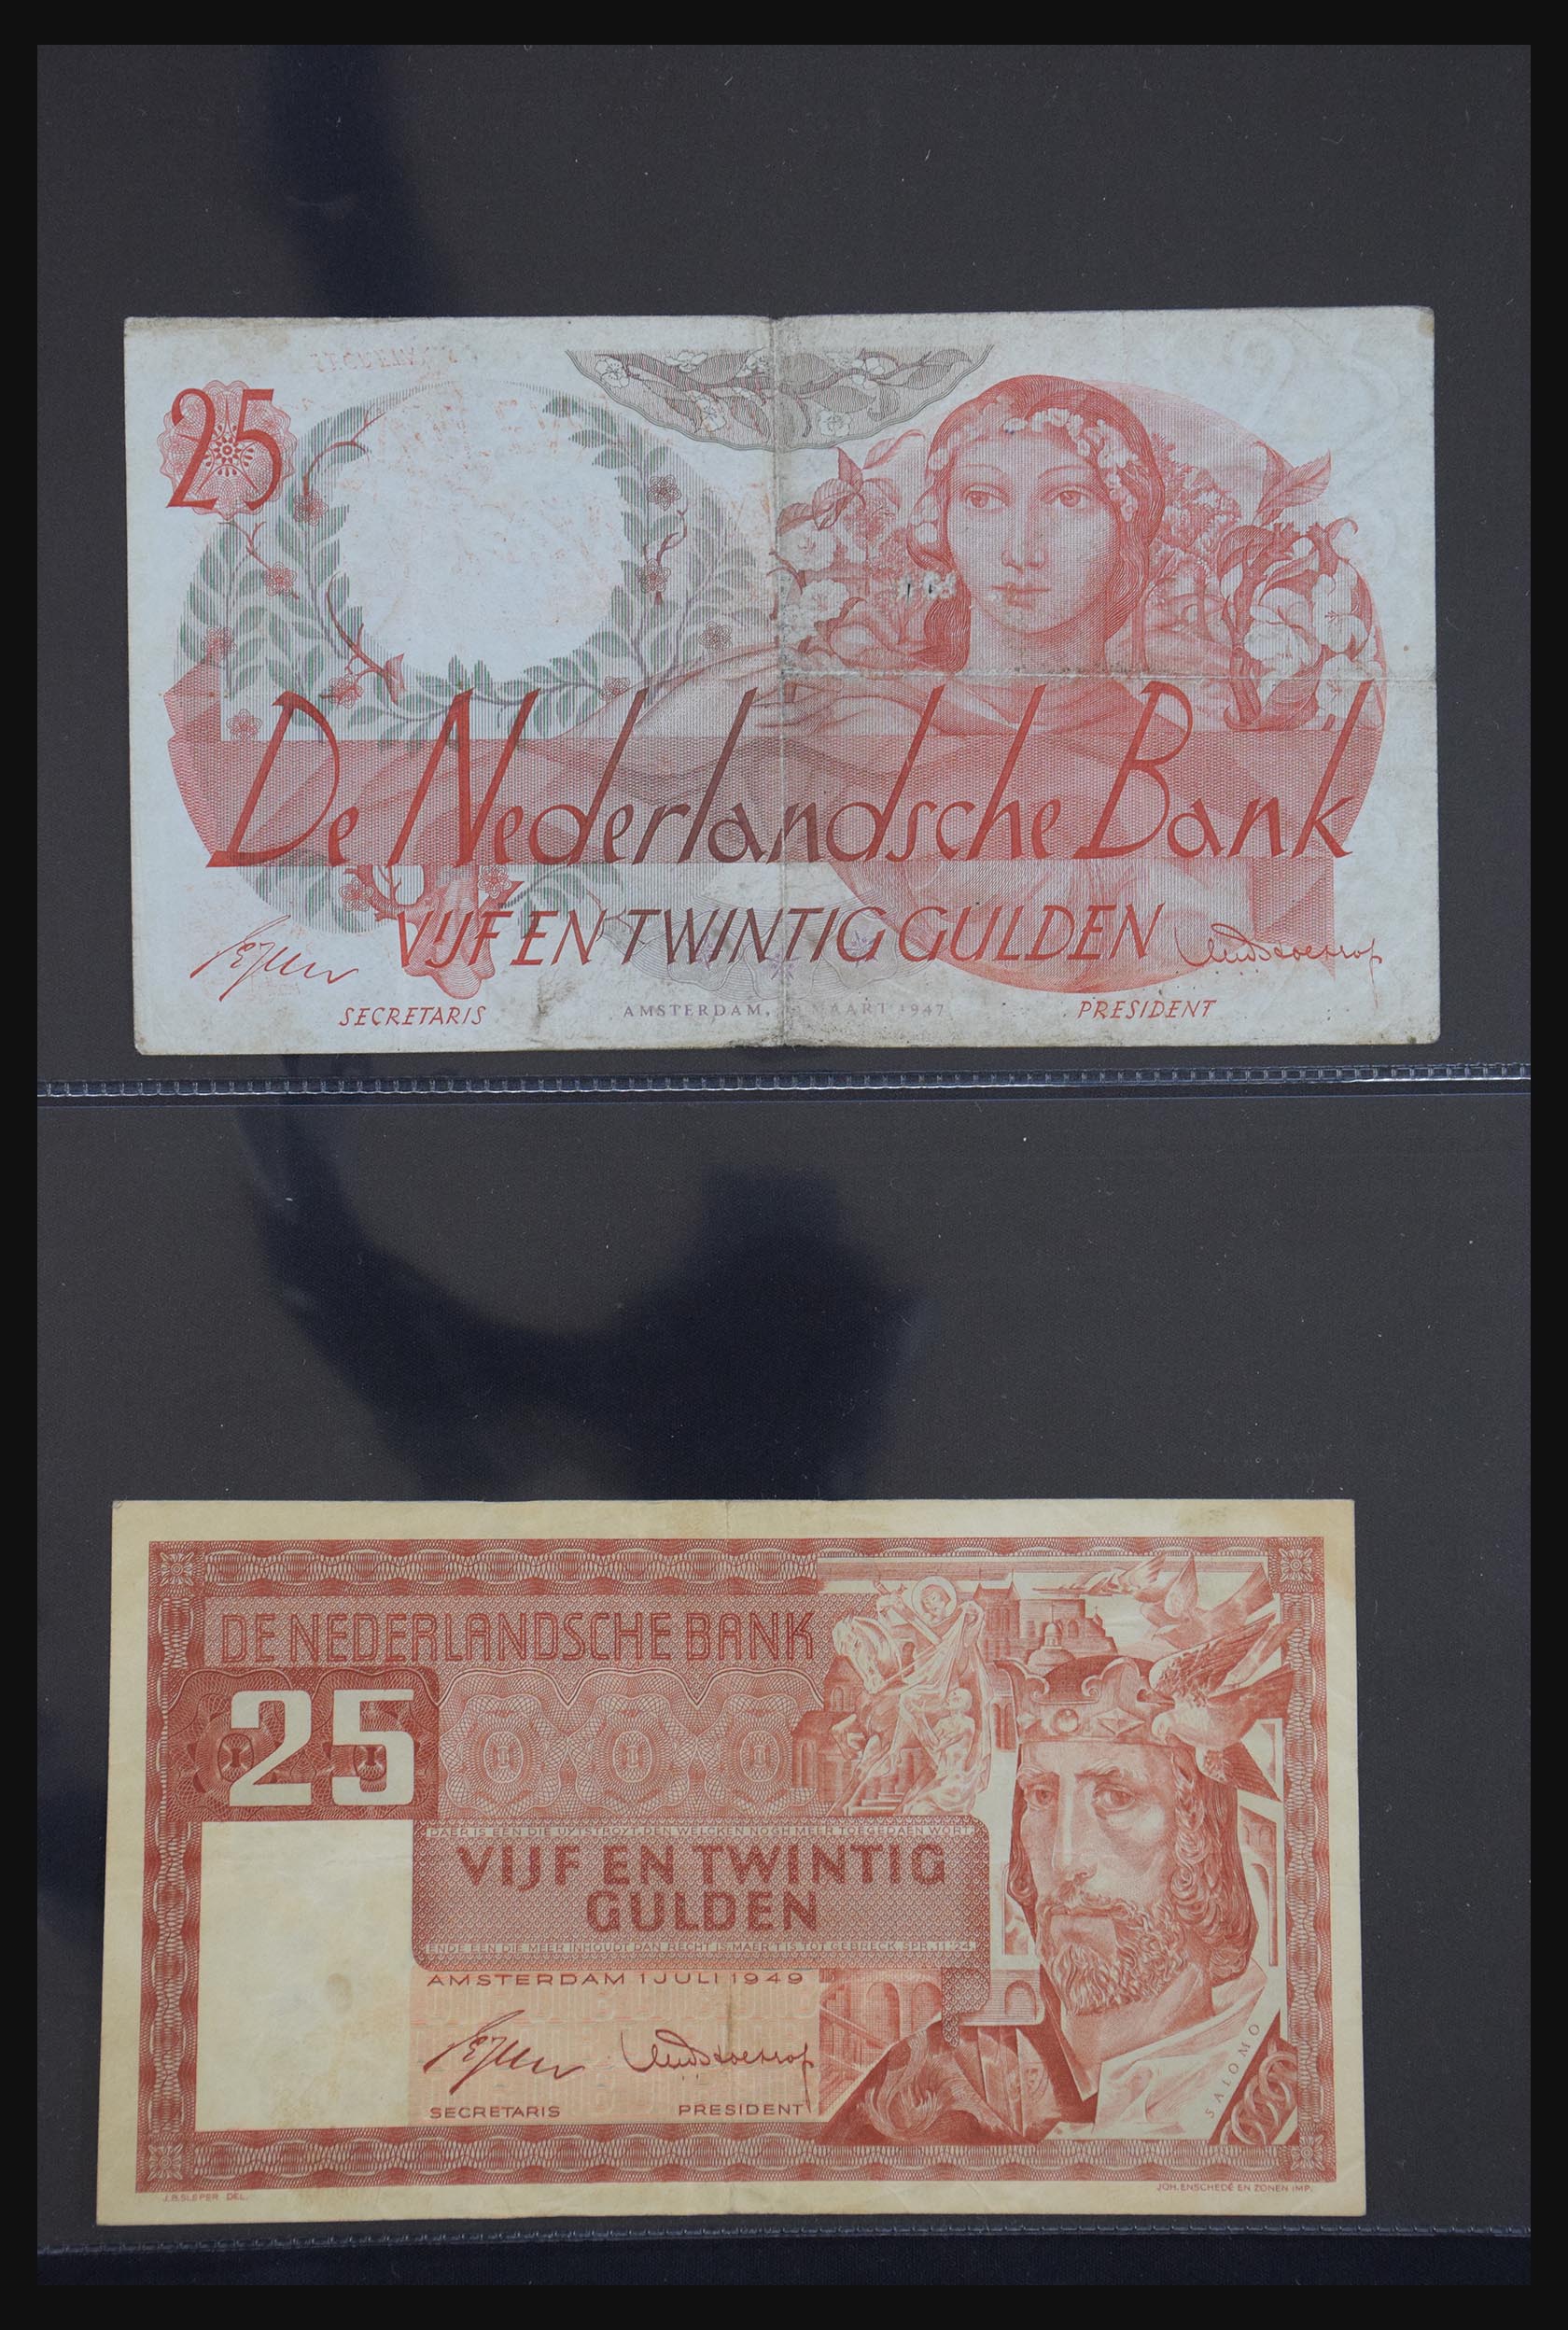 29404 031 - 29404 Netherlands banknotes 1924-1997.